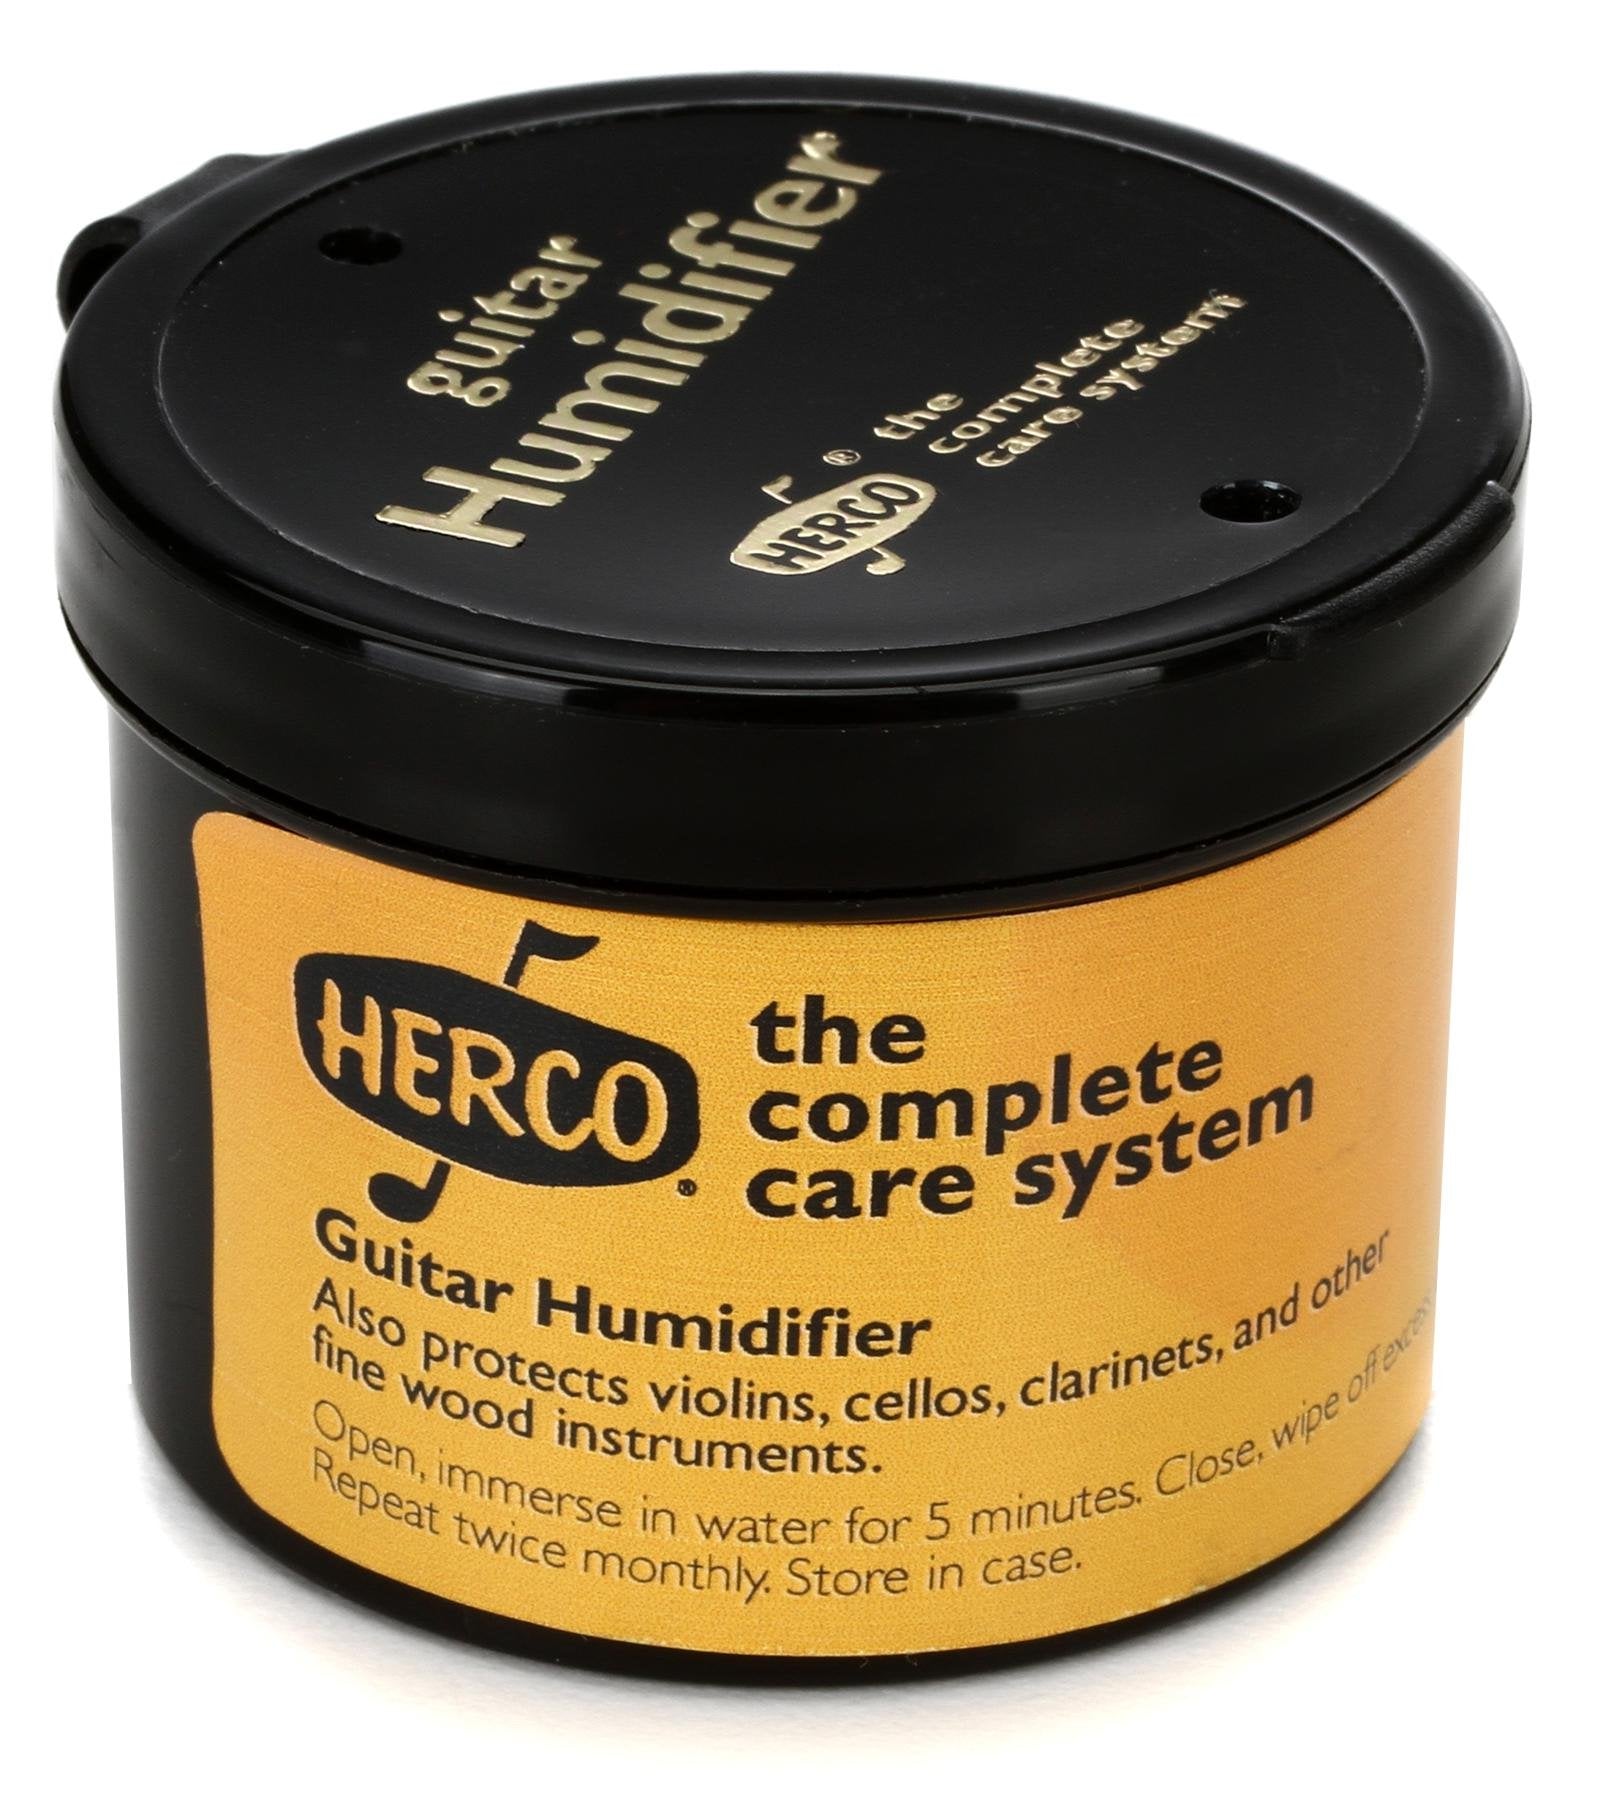 Herco Guitar Humidifier